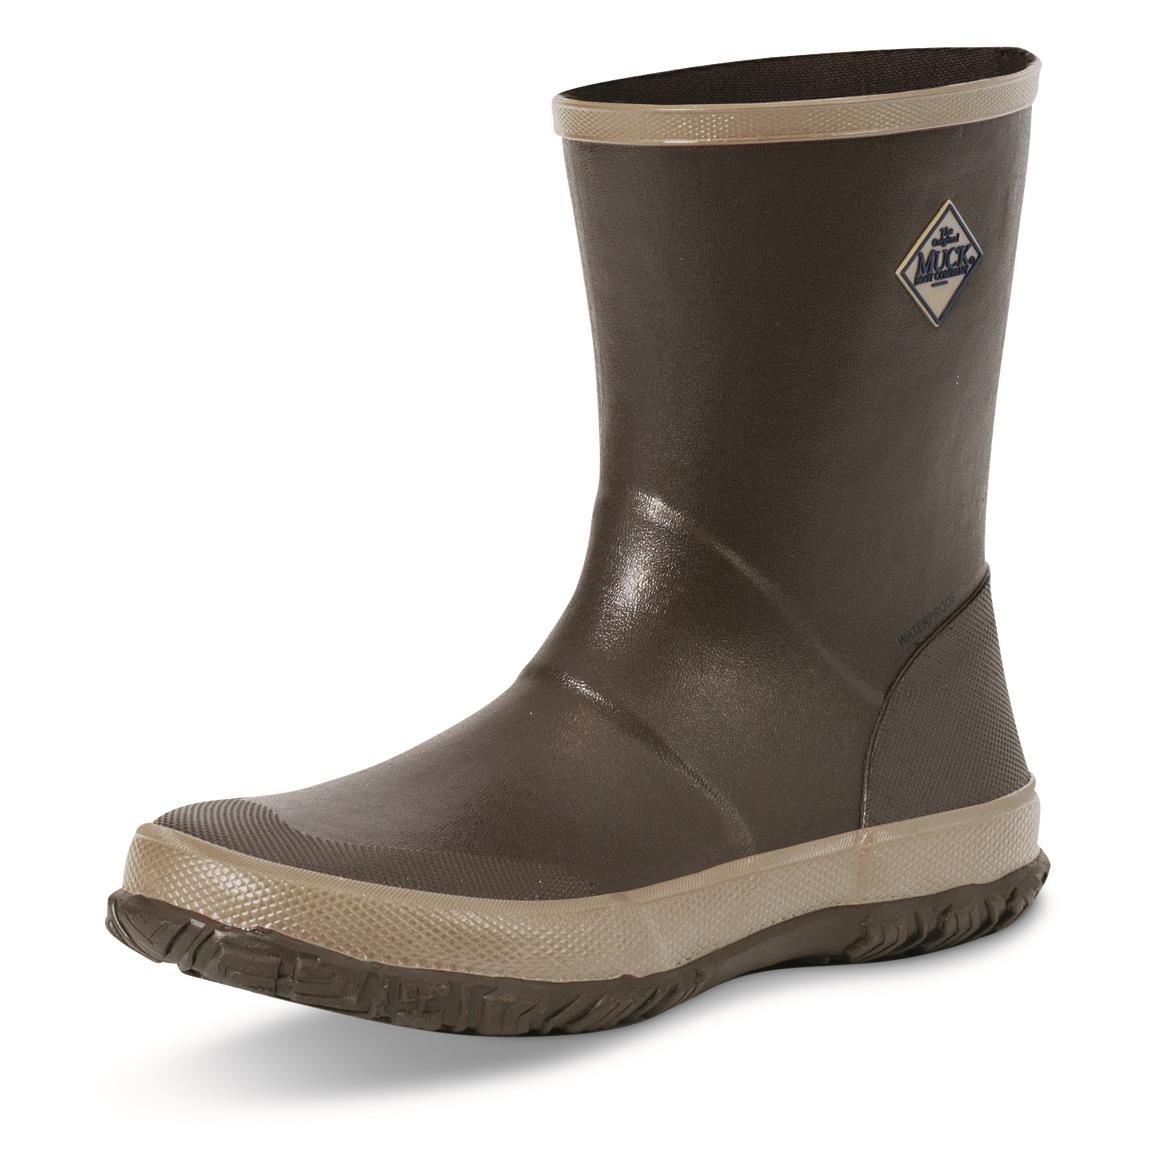 Muck Men's Forager Mid Waterproof Rubber Boots, Dark Brown